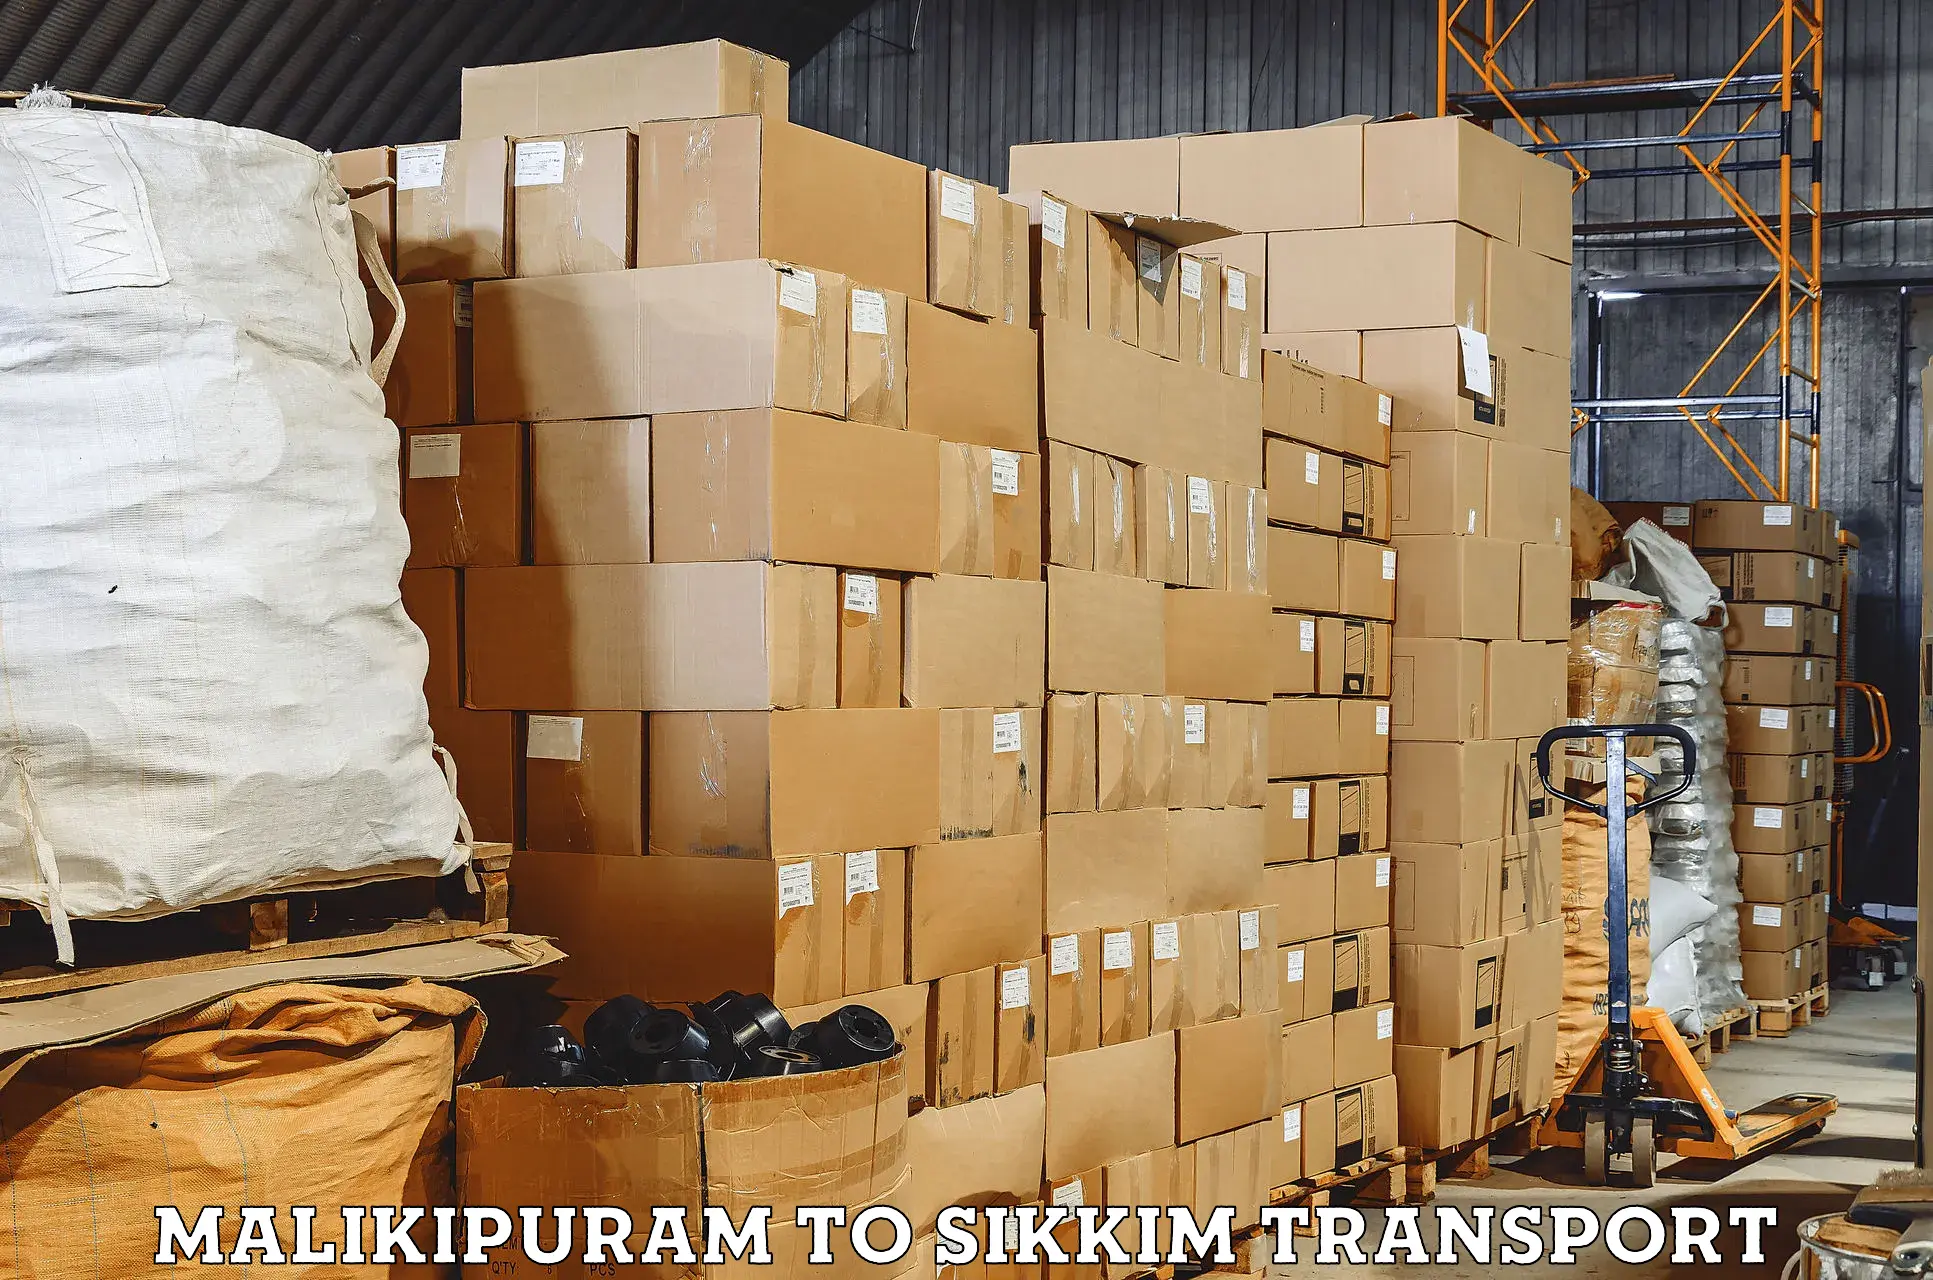 Air cargo transport services Malikipuram to Jorethang